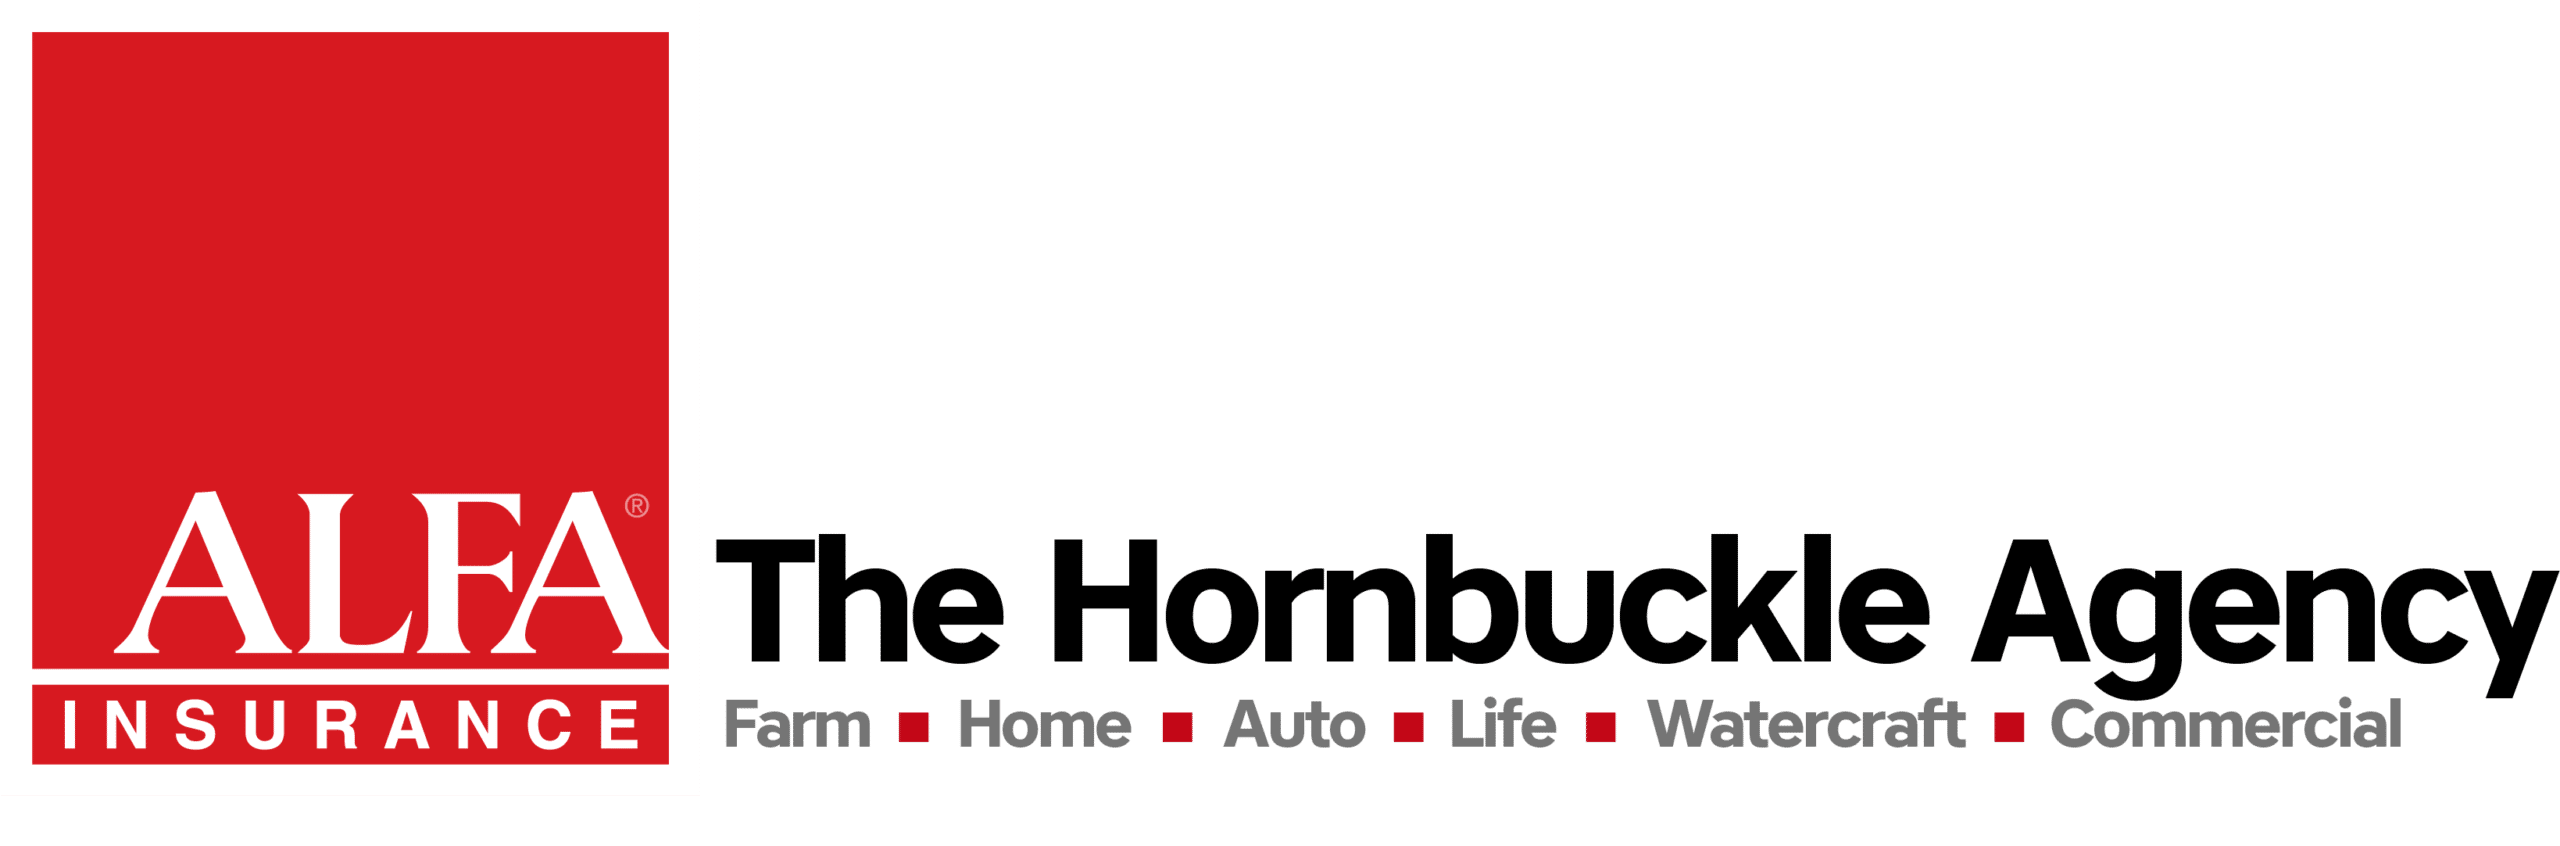 Alfa Insurance – The Hornbuckle Agency